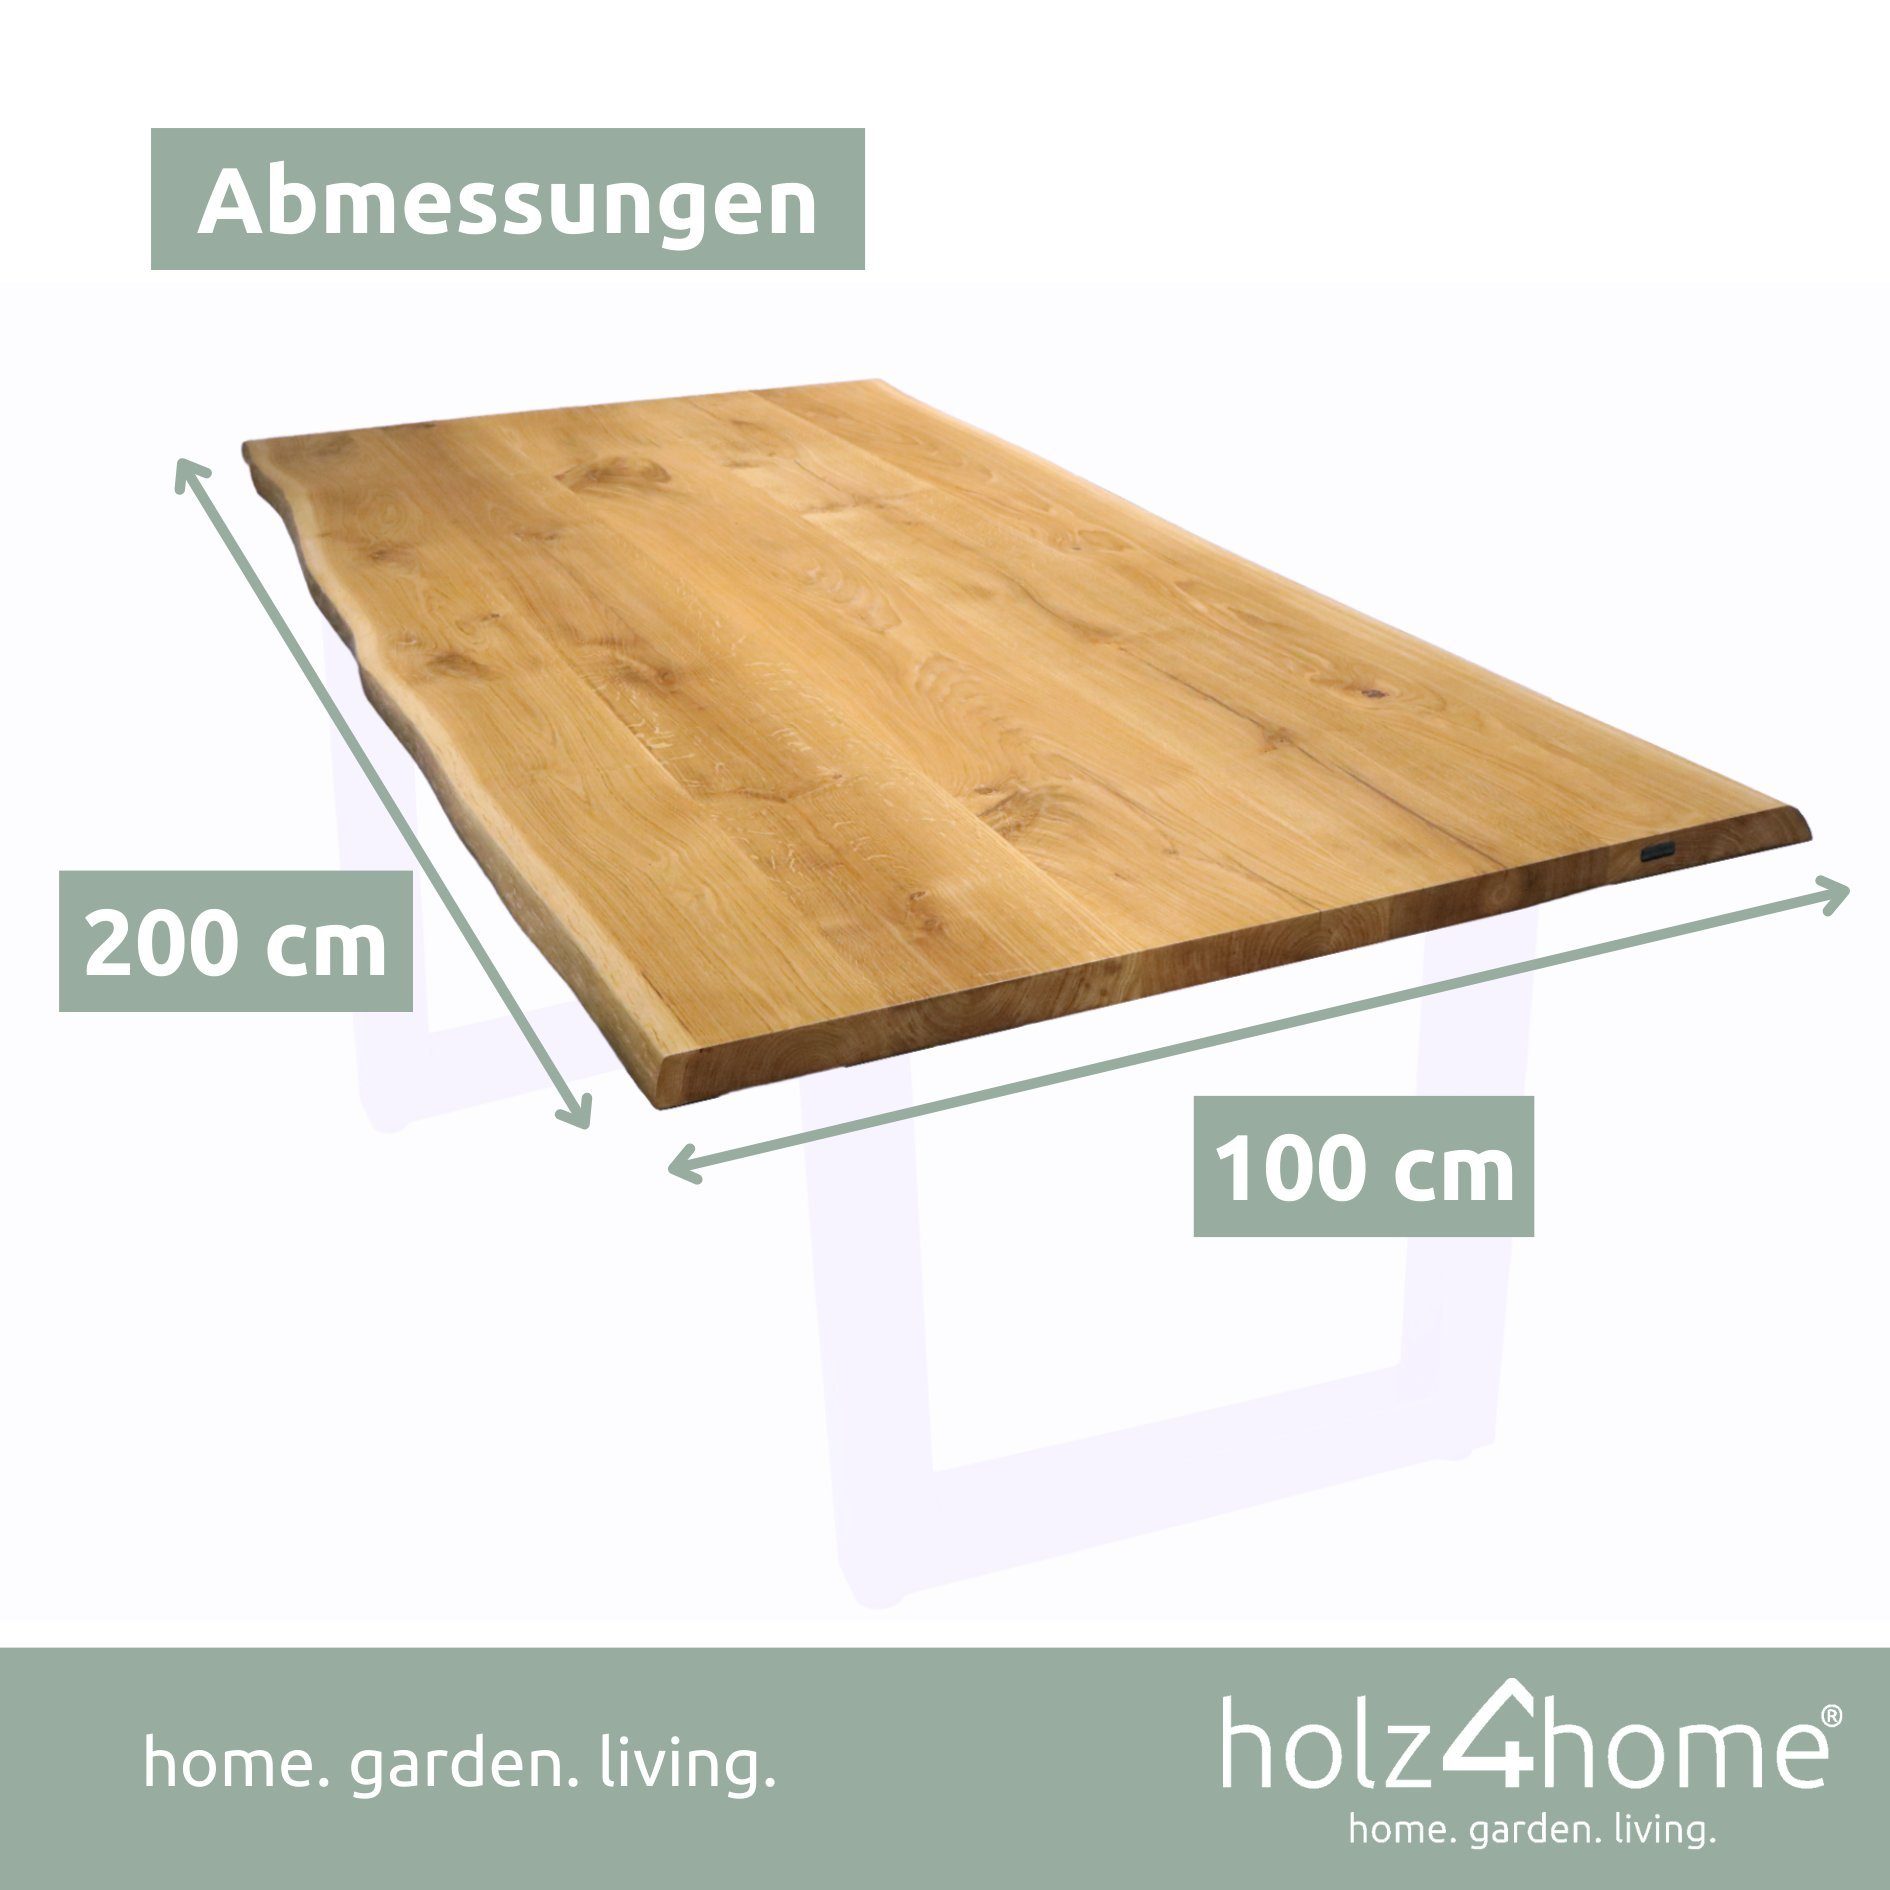 Esstischplatte 100cm Tischplatte Baumkante aus massiver x Eiche holz4home mit 200cm